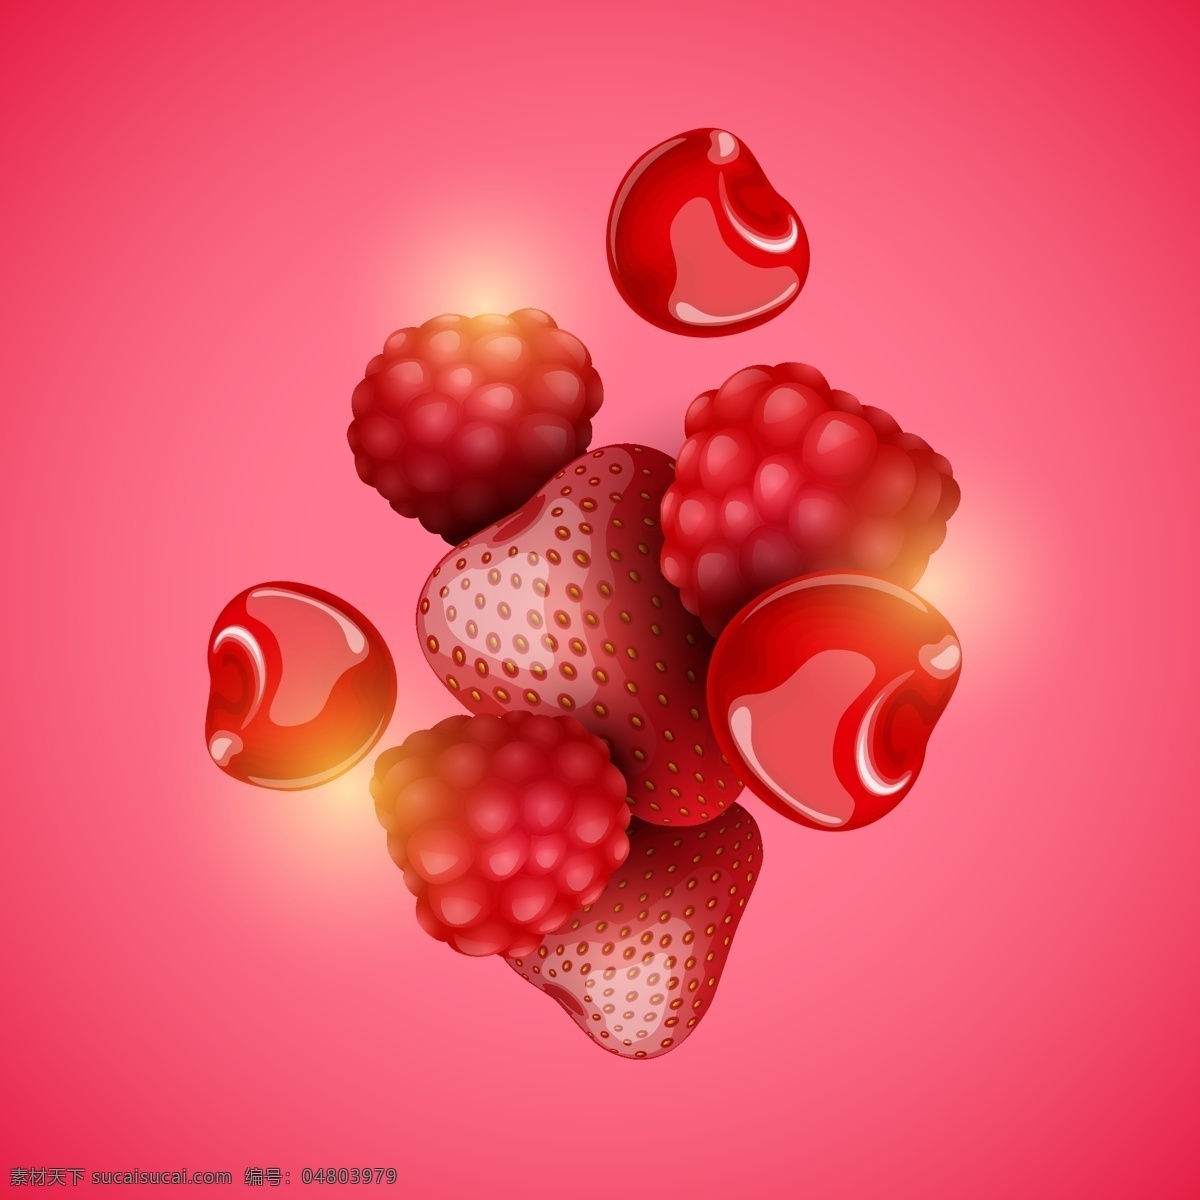 新鲜 美味 草莓 樱桃 插画 水果 树莓 诱人